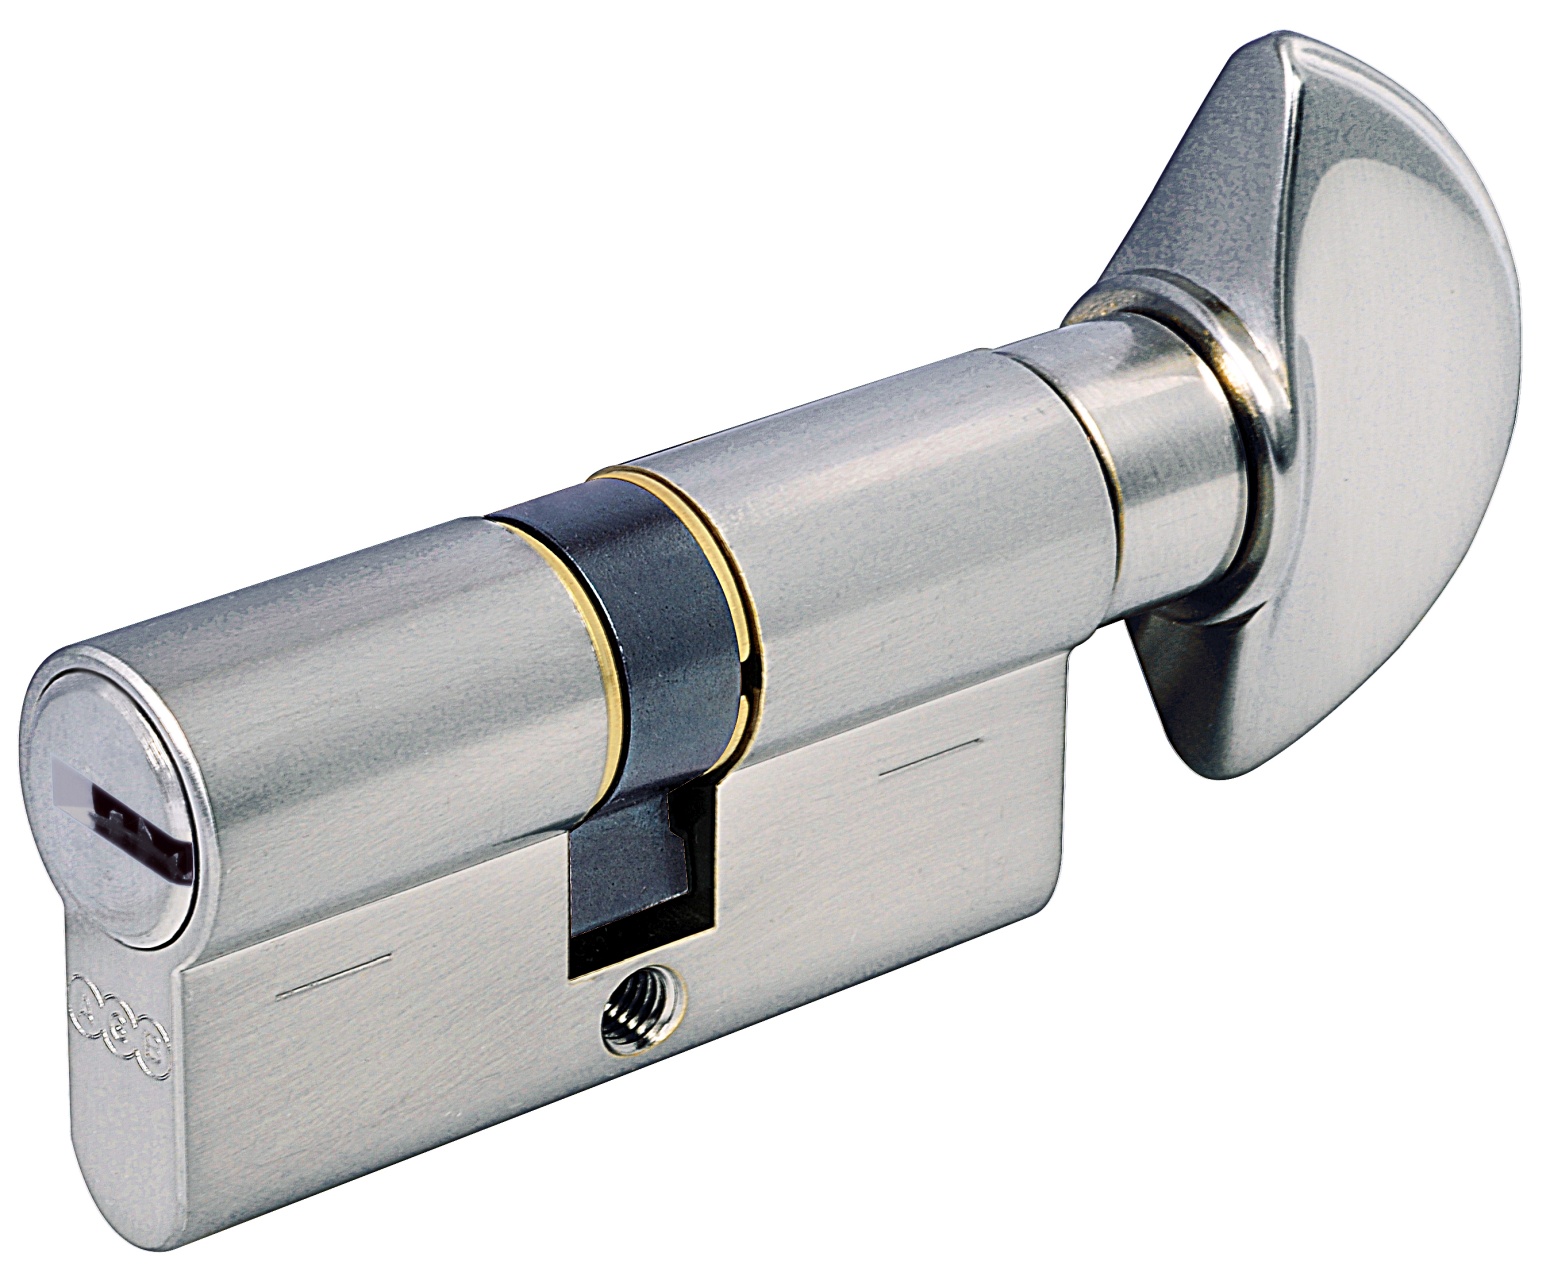 AGB -  Cilindro SCUDO 5000 PS frizionato anti bamping con chiave e pomolo - col. NICHELATO OPACO - lunghezza 80 - misura P-45-10-25